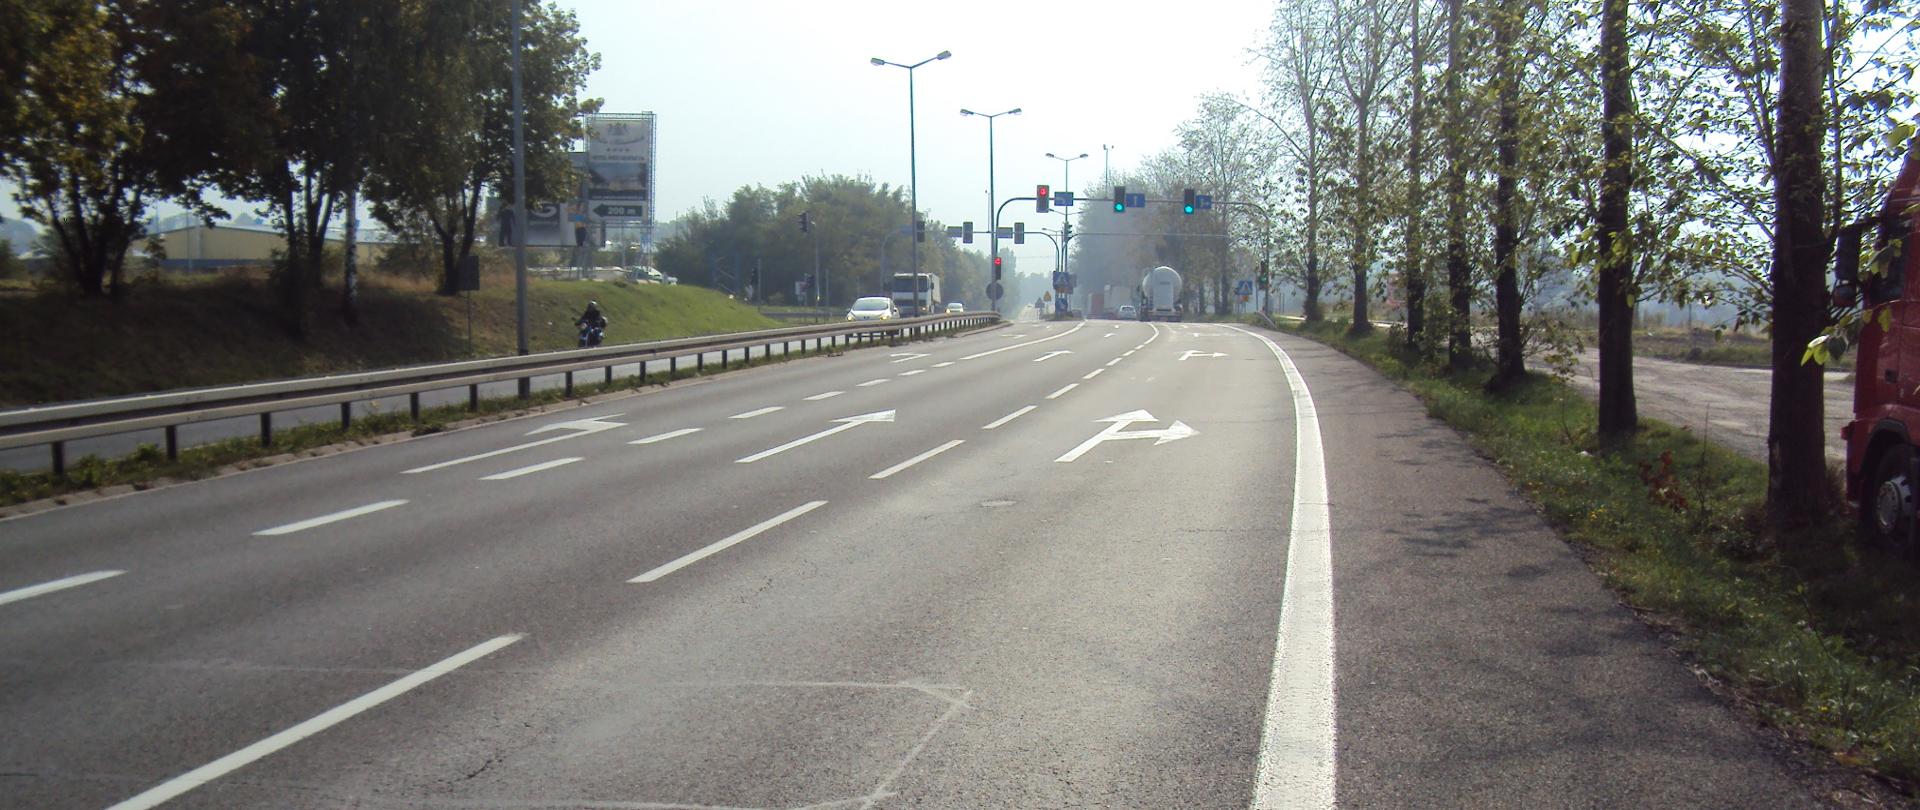 skrzyżowanie DK91, zdjęcie przedstawia skrzyżowanie czterowlotowe wyposażone w sygnalizację świetlną na drodze dwujezdniowej a dwóch pasach ruchu w każdym kierunku